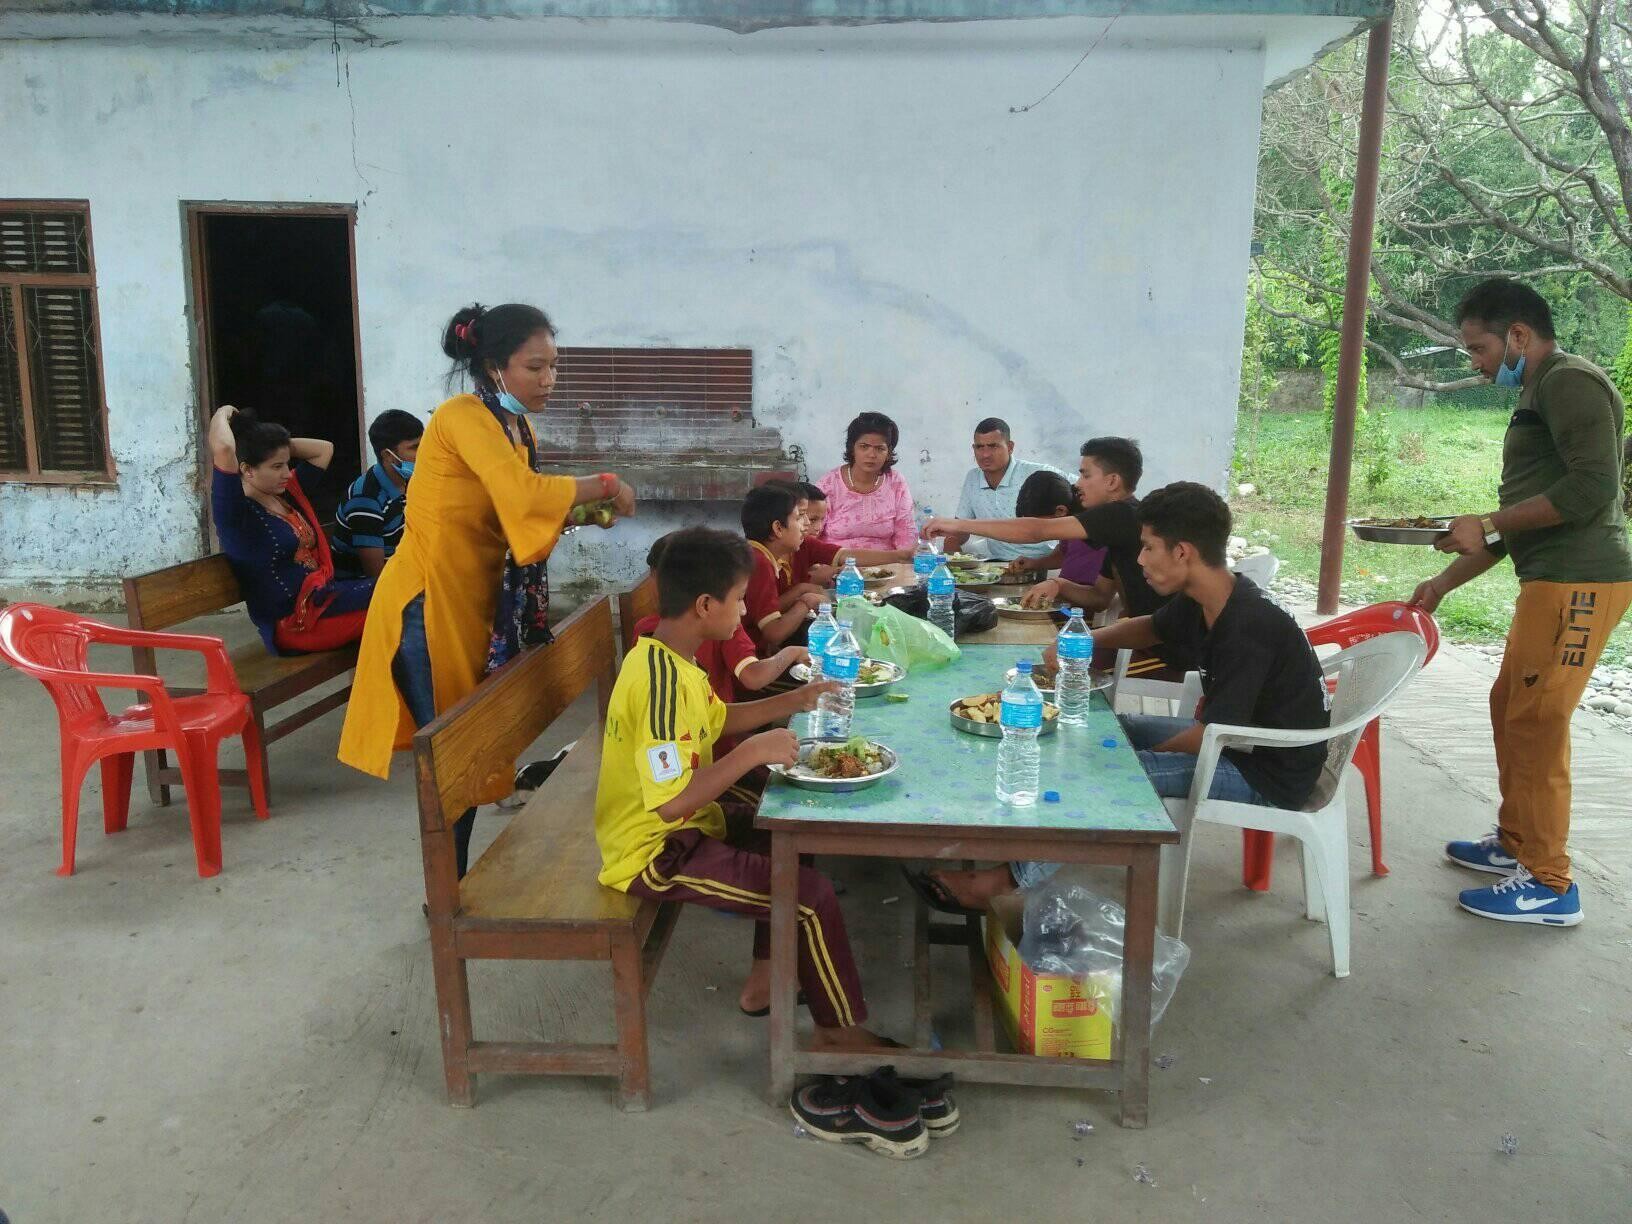 सनसेट ग्रुपको सह्रानीय कार्य : अनाथालयका बालबालिकालाई खाना खुवाई मनाइयो बाल दिवस